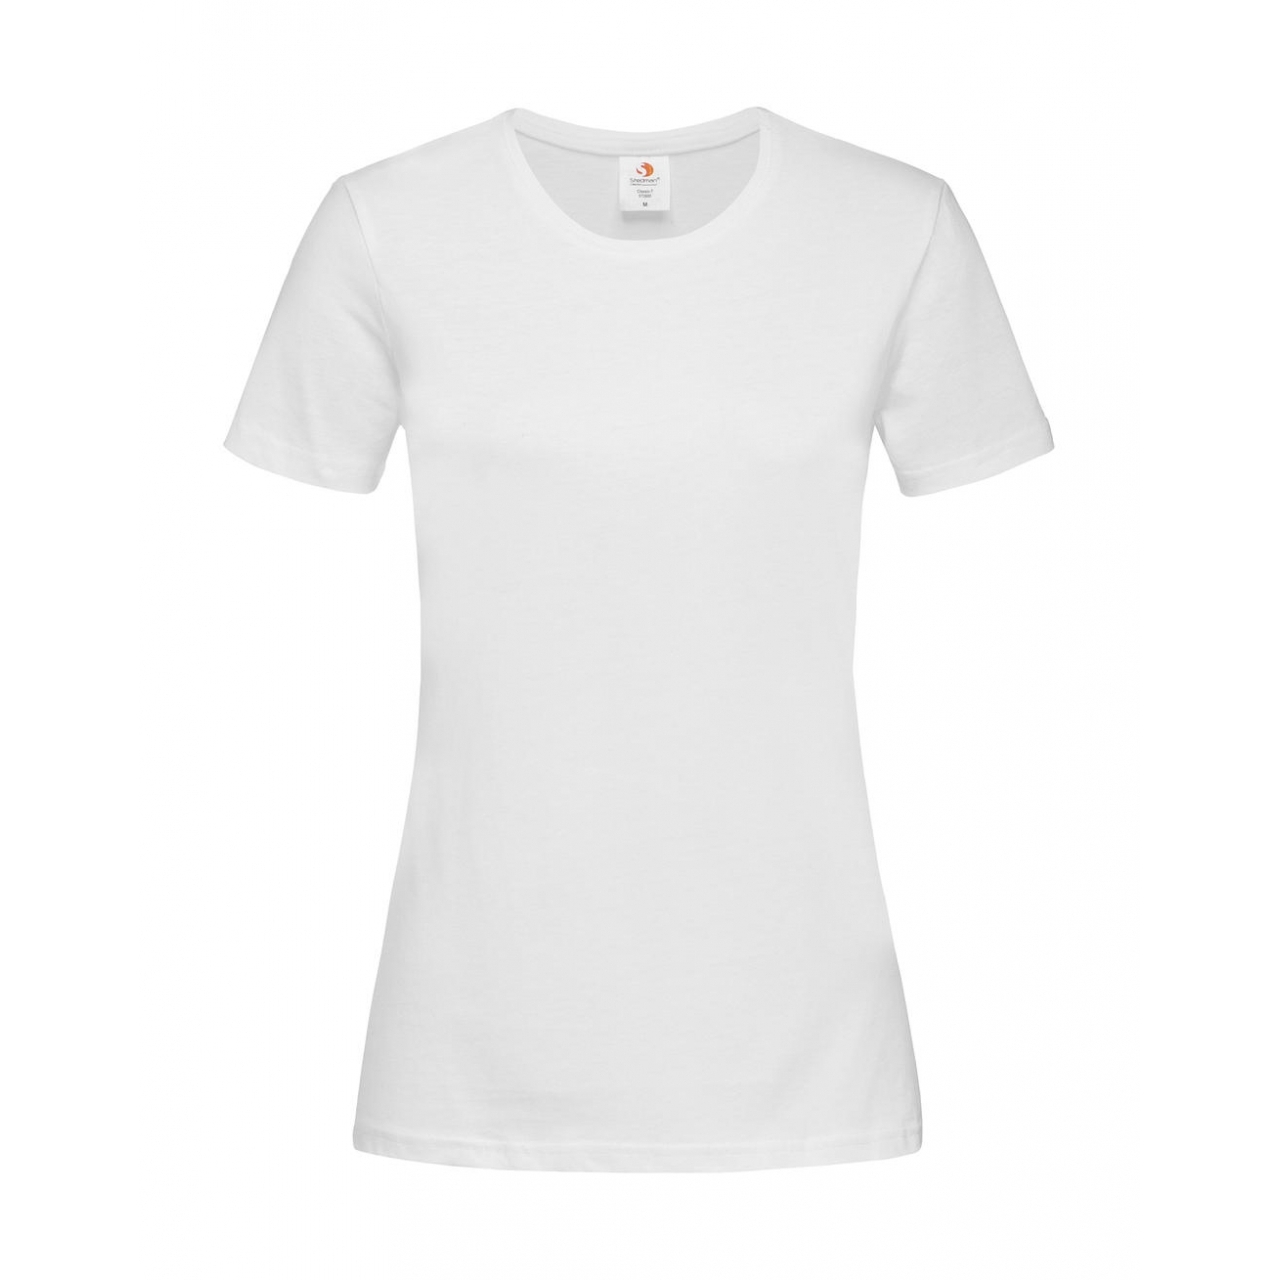 Tričko dámské Stedman Fitted s kulatým výstřihem - bílé, XXL